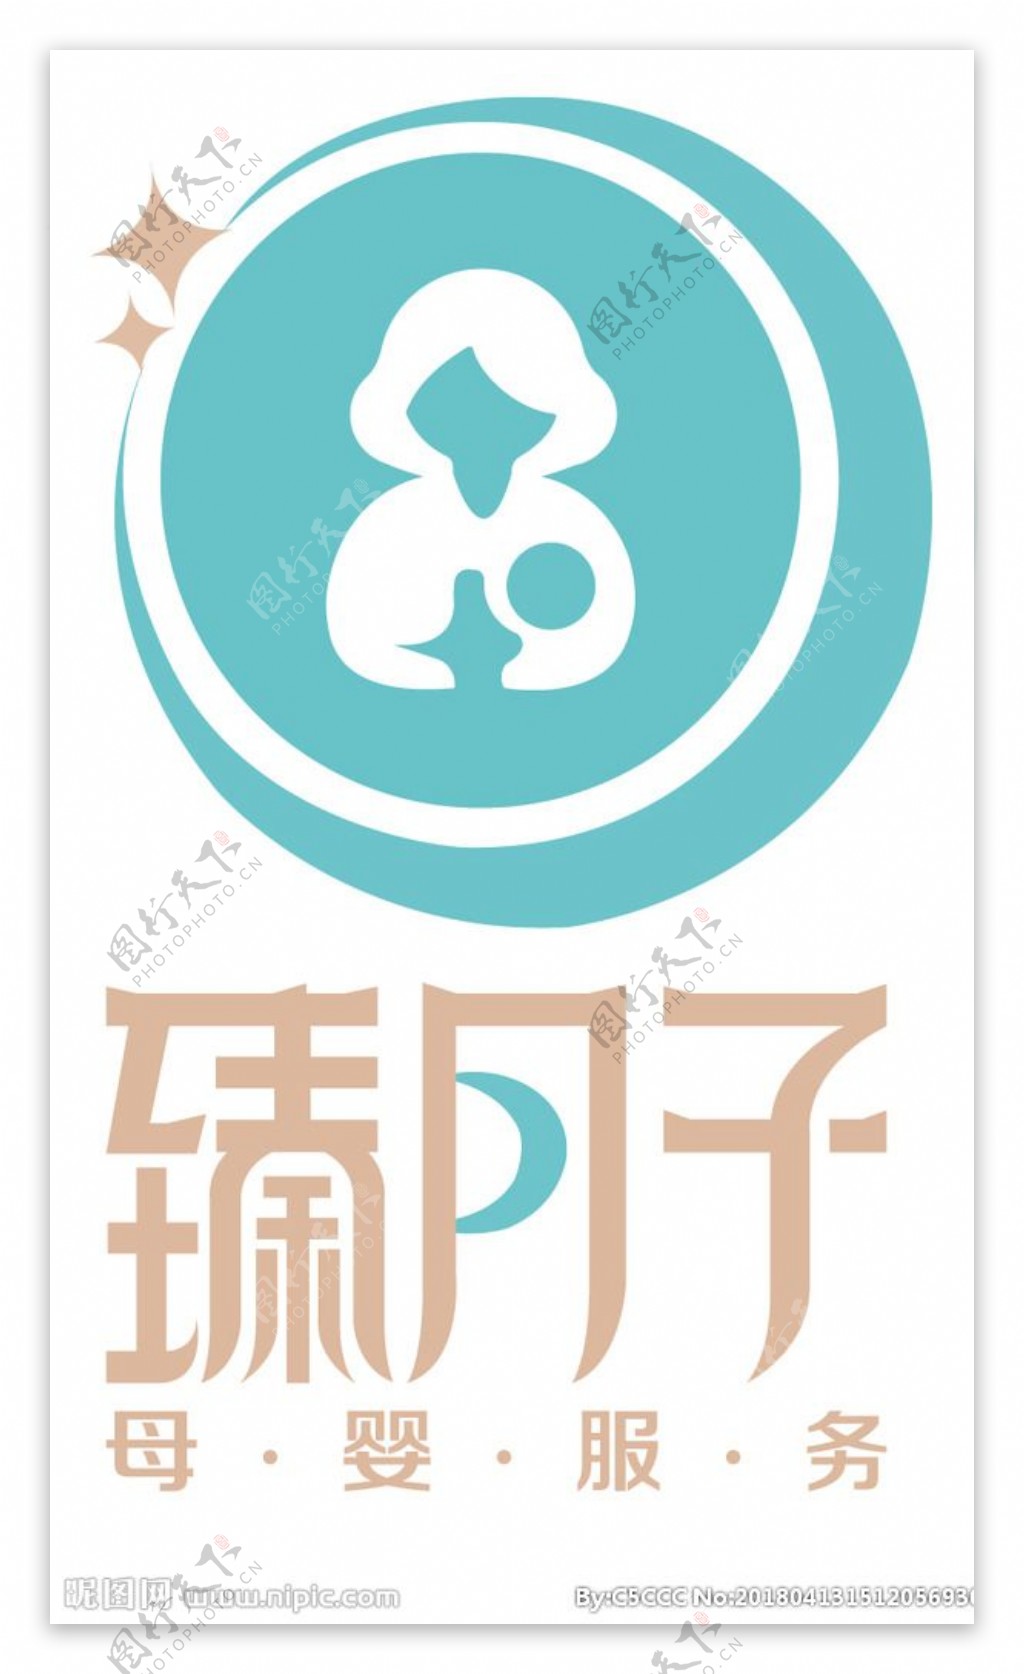 臻月子logo